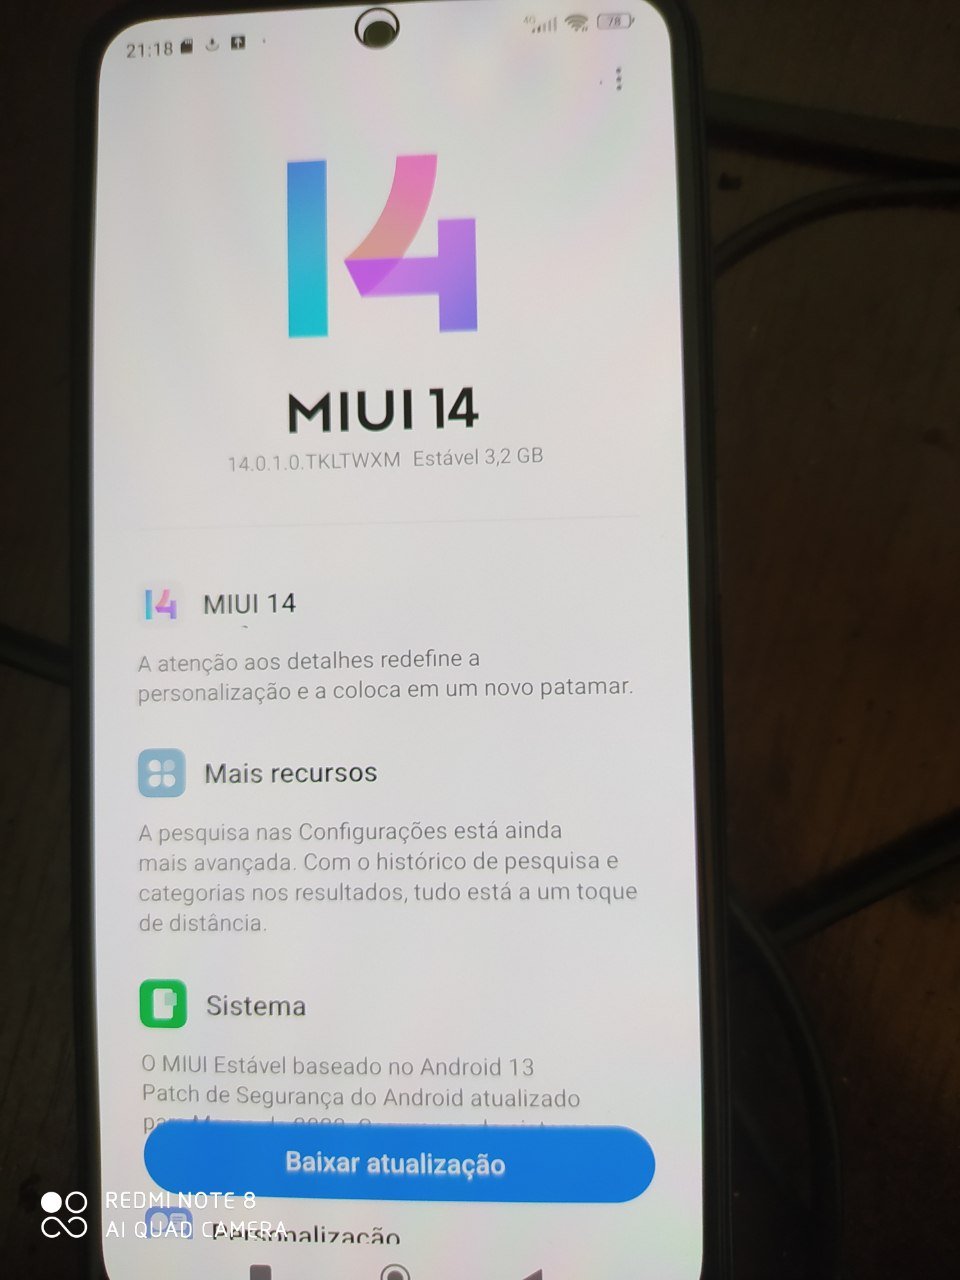 Redmi Note 10S MIUI 14 update